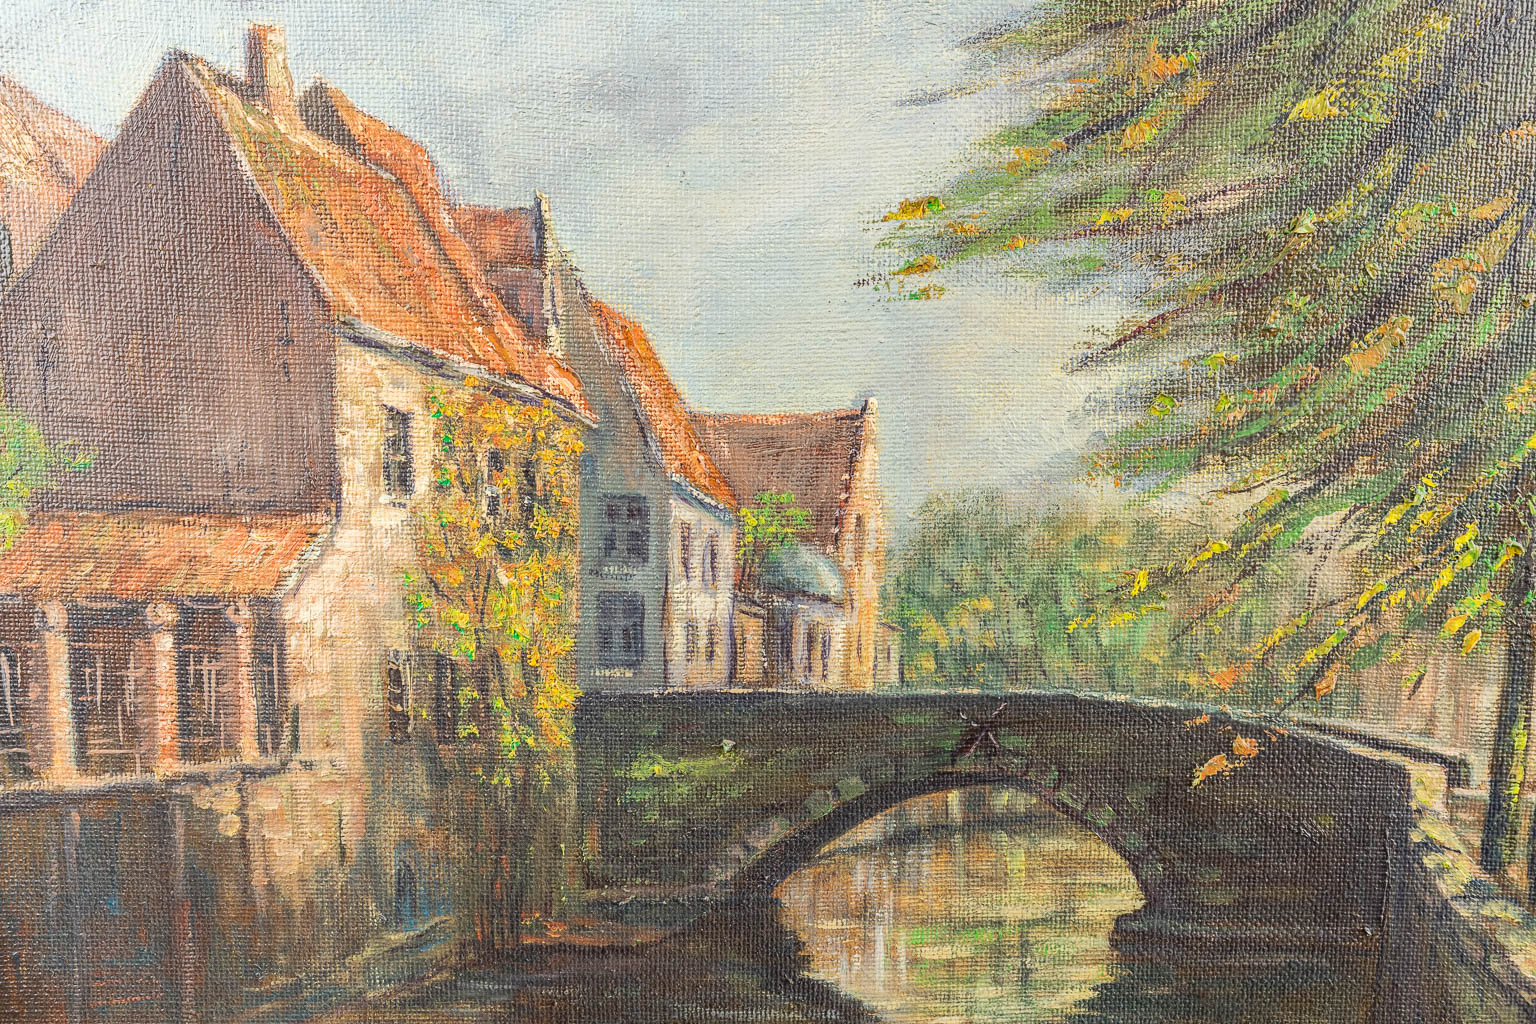 J. DEVULDER (XX) 'Brugge' een collectie van 3 schilderijen. (80 x 60 cm)